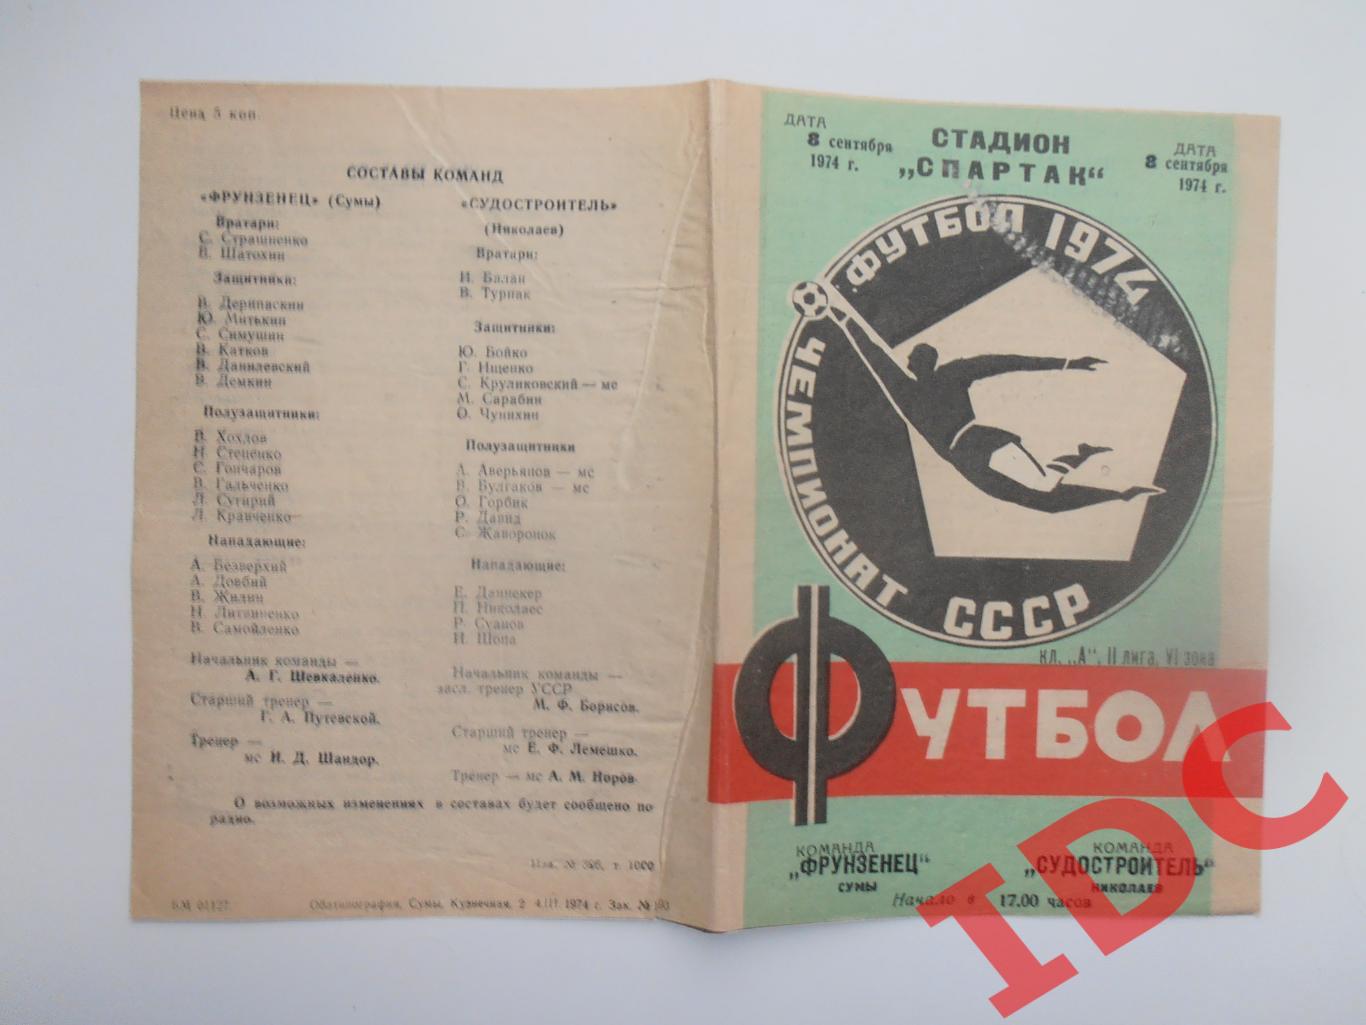 Фрунзенец Сумы-Судостроитель Николаев 8 сентября 1974